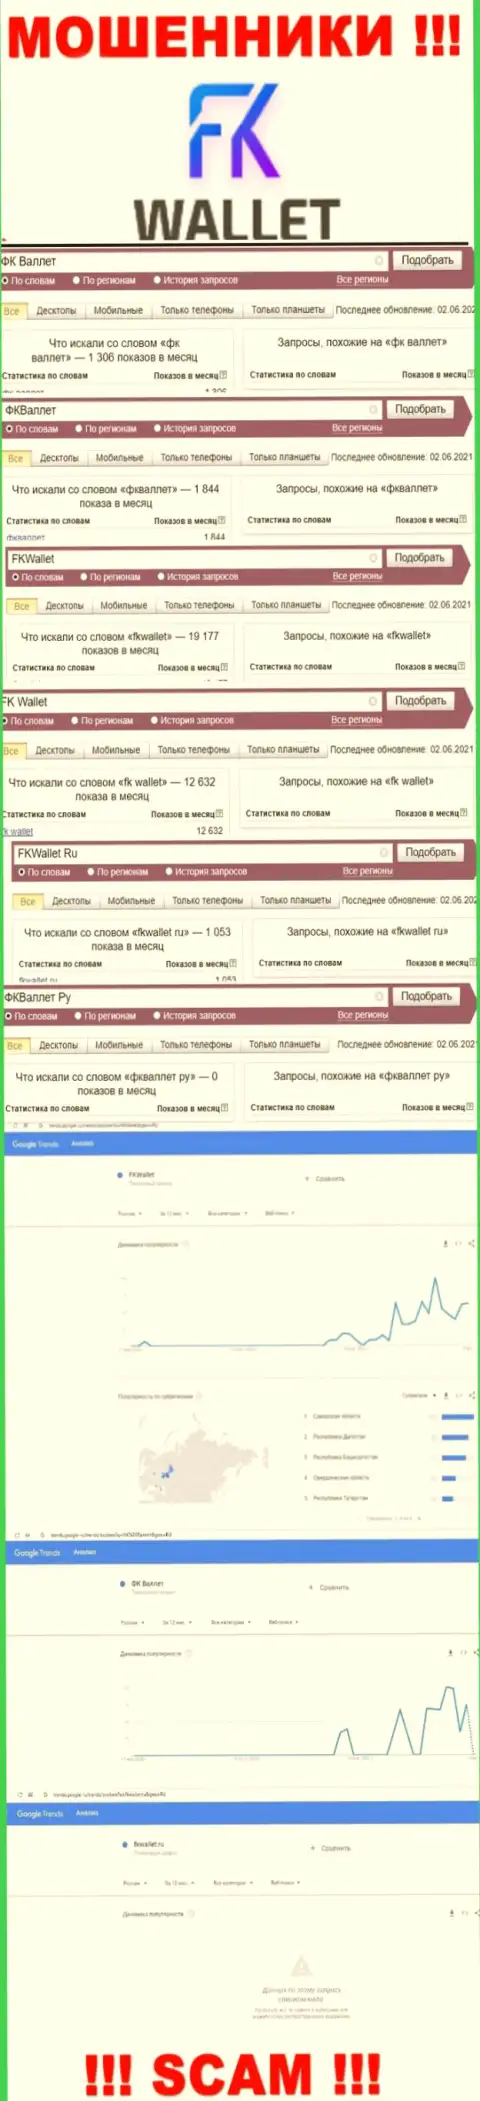 Скриншот статистических данных поисковых запросов по жульнической конторе FKWallet Ru